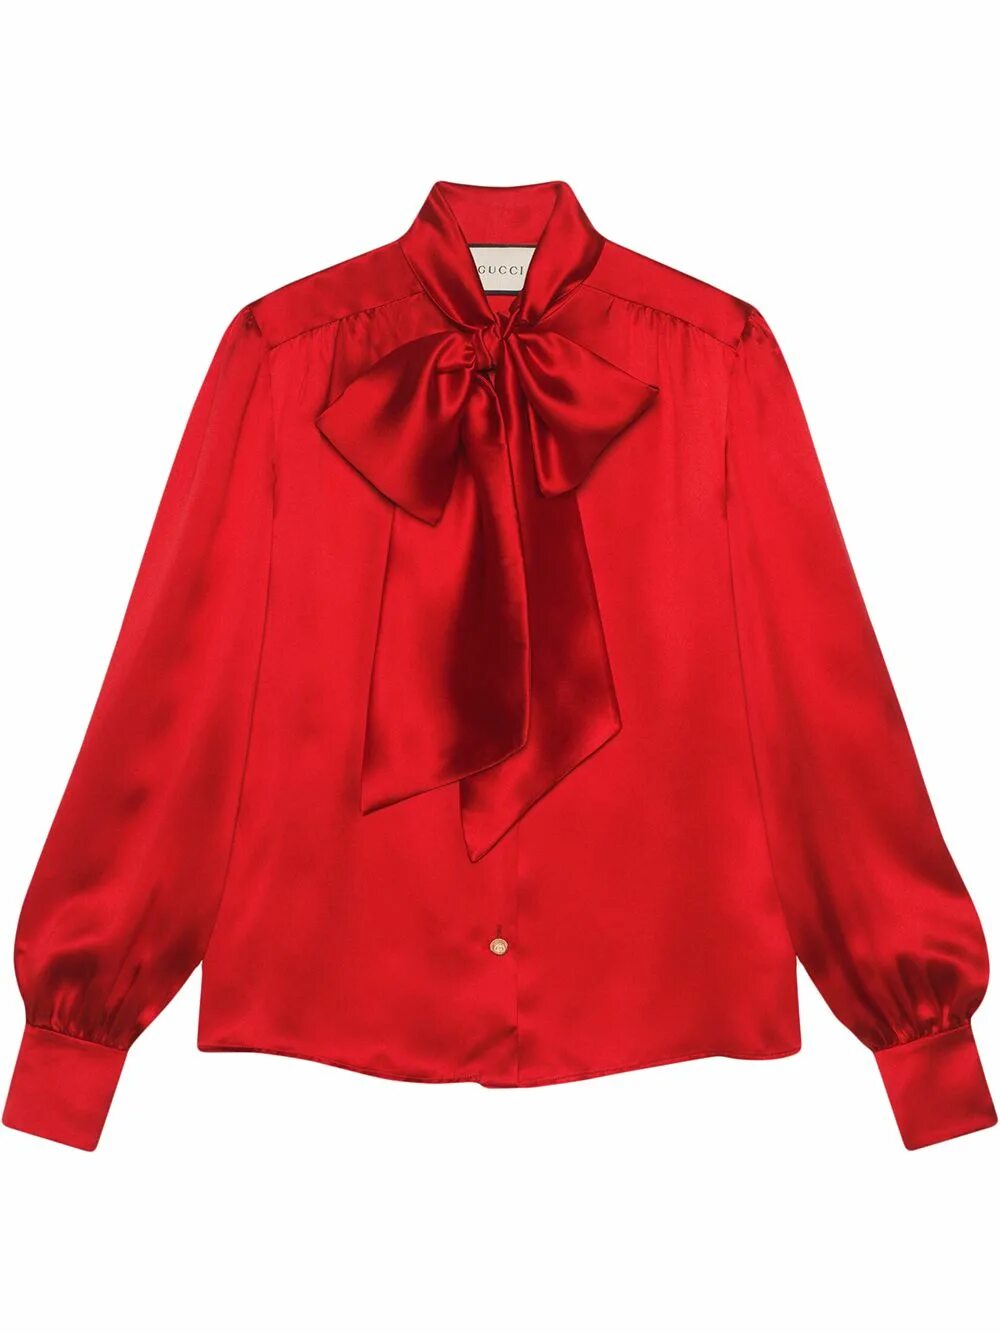 Блузки красного цвета. Красная блузка с бантом гуччи. Блузка гуччи женская. Блузка красная LC Waikiki. Красная рубашка женская.